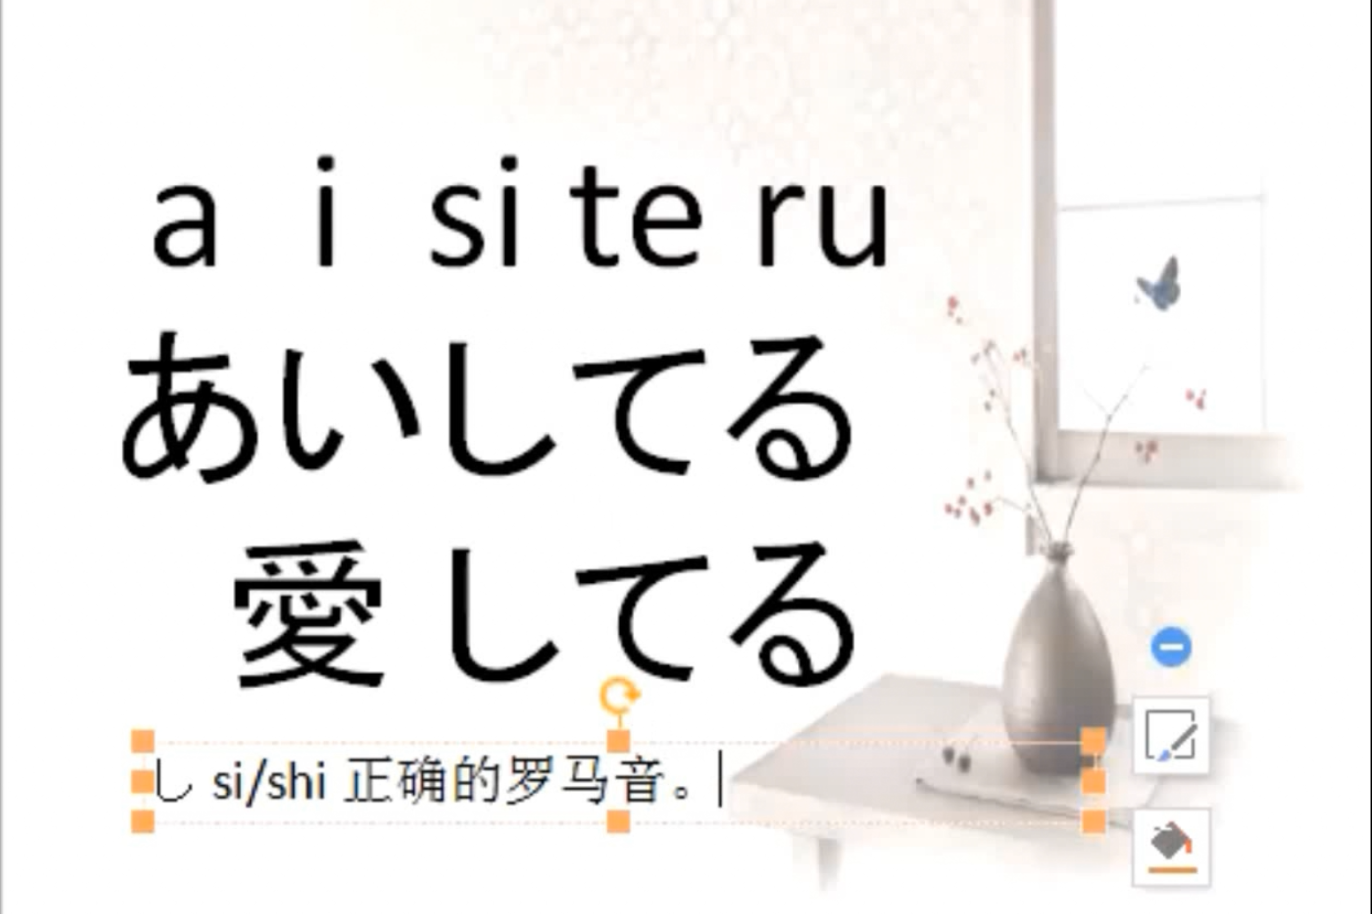 【日语在线学习】基础入门视频发音培训教程日语常用语我爱你怎么说